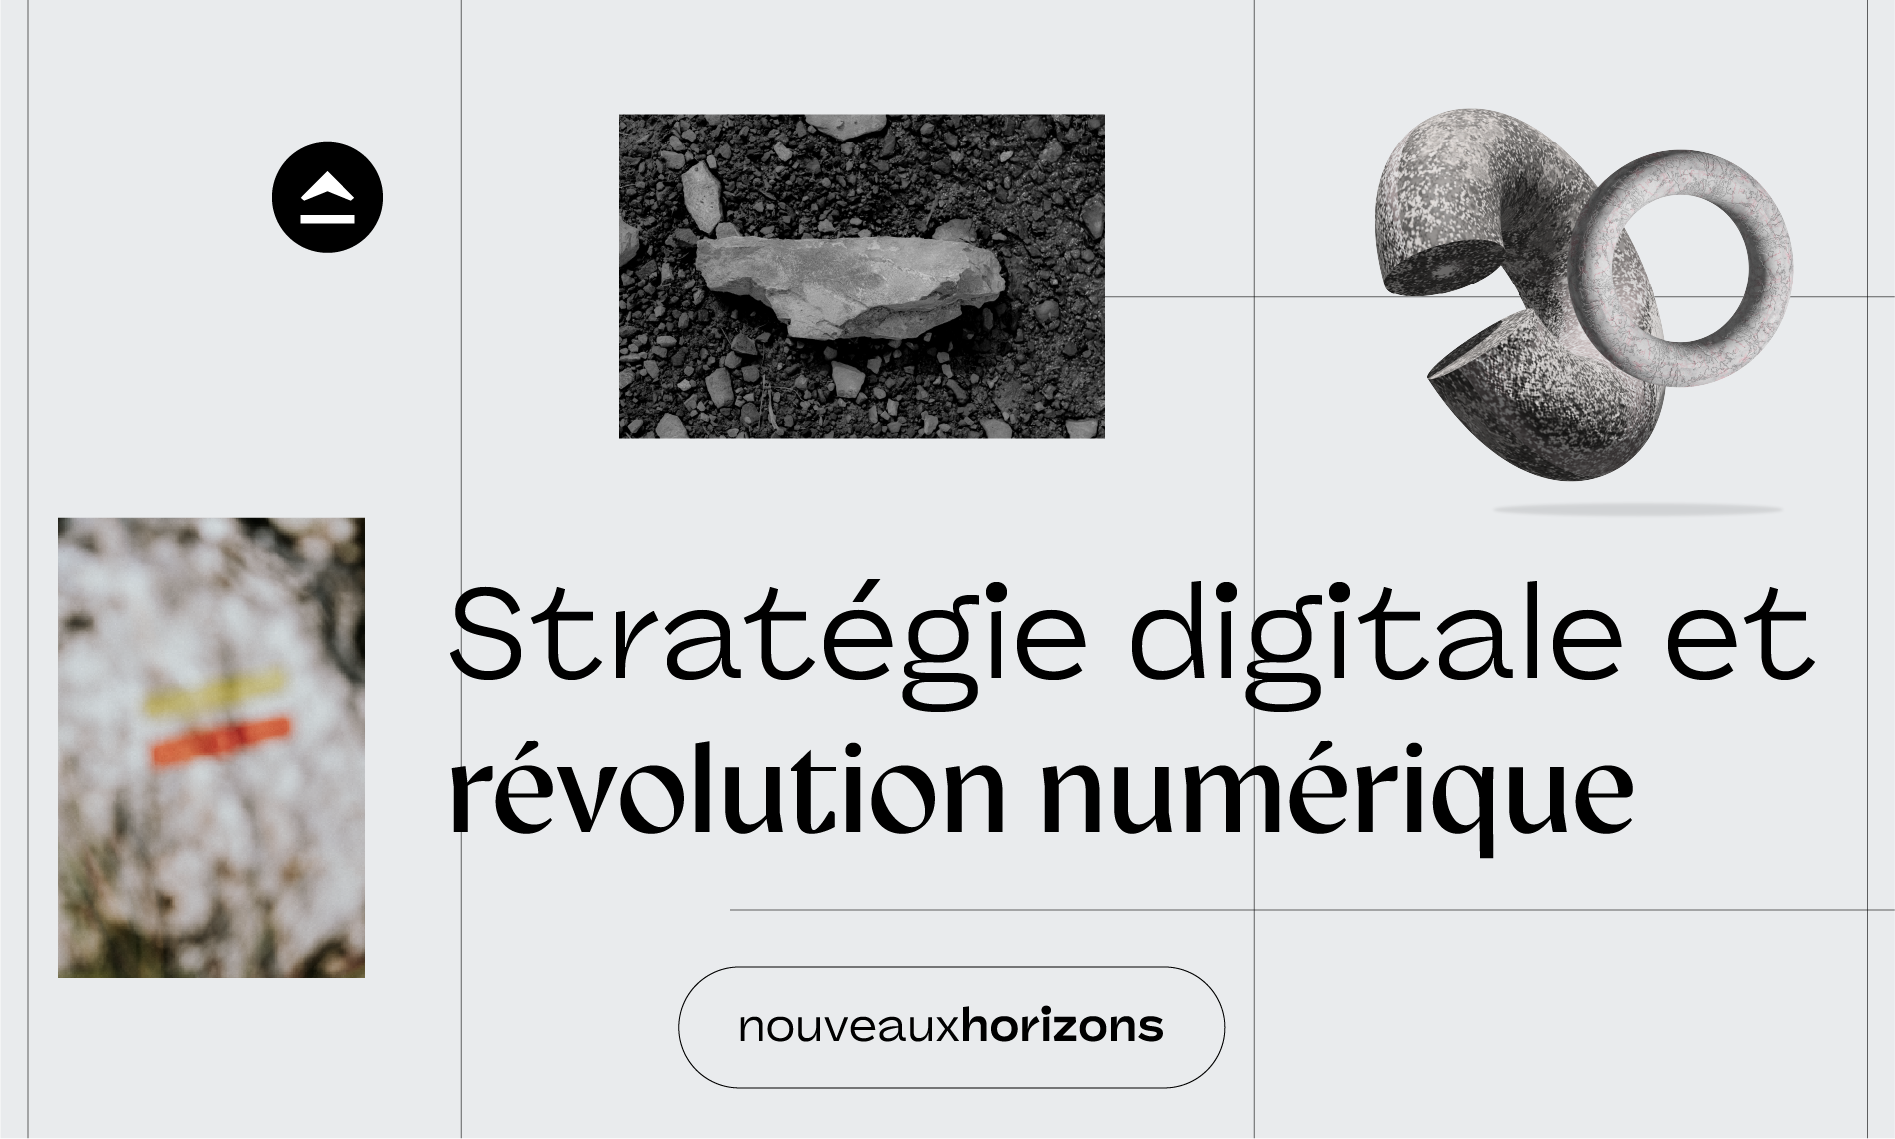 strategie digitale revolution numérique